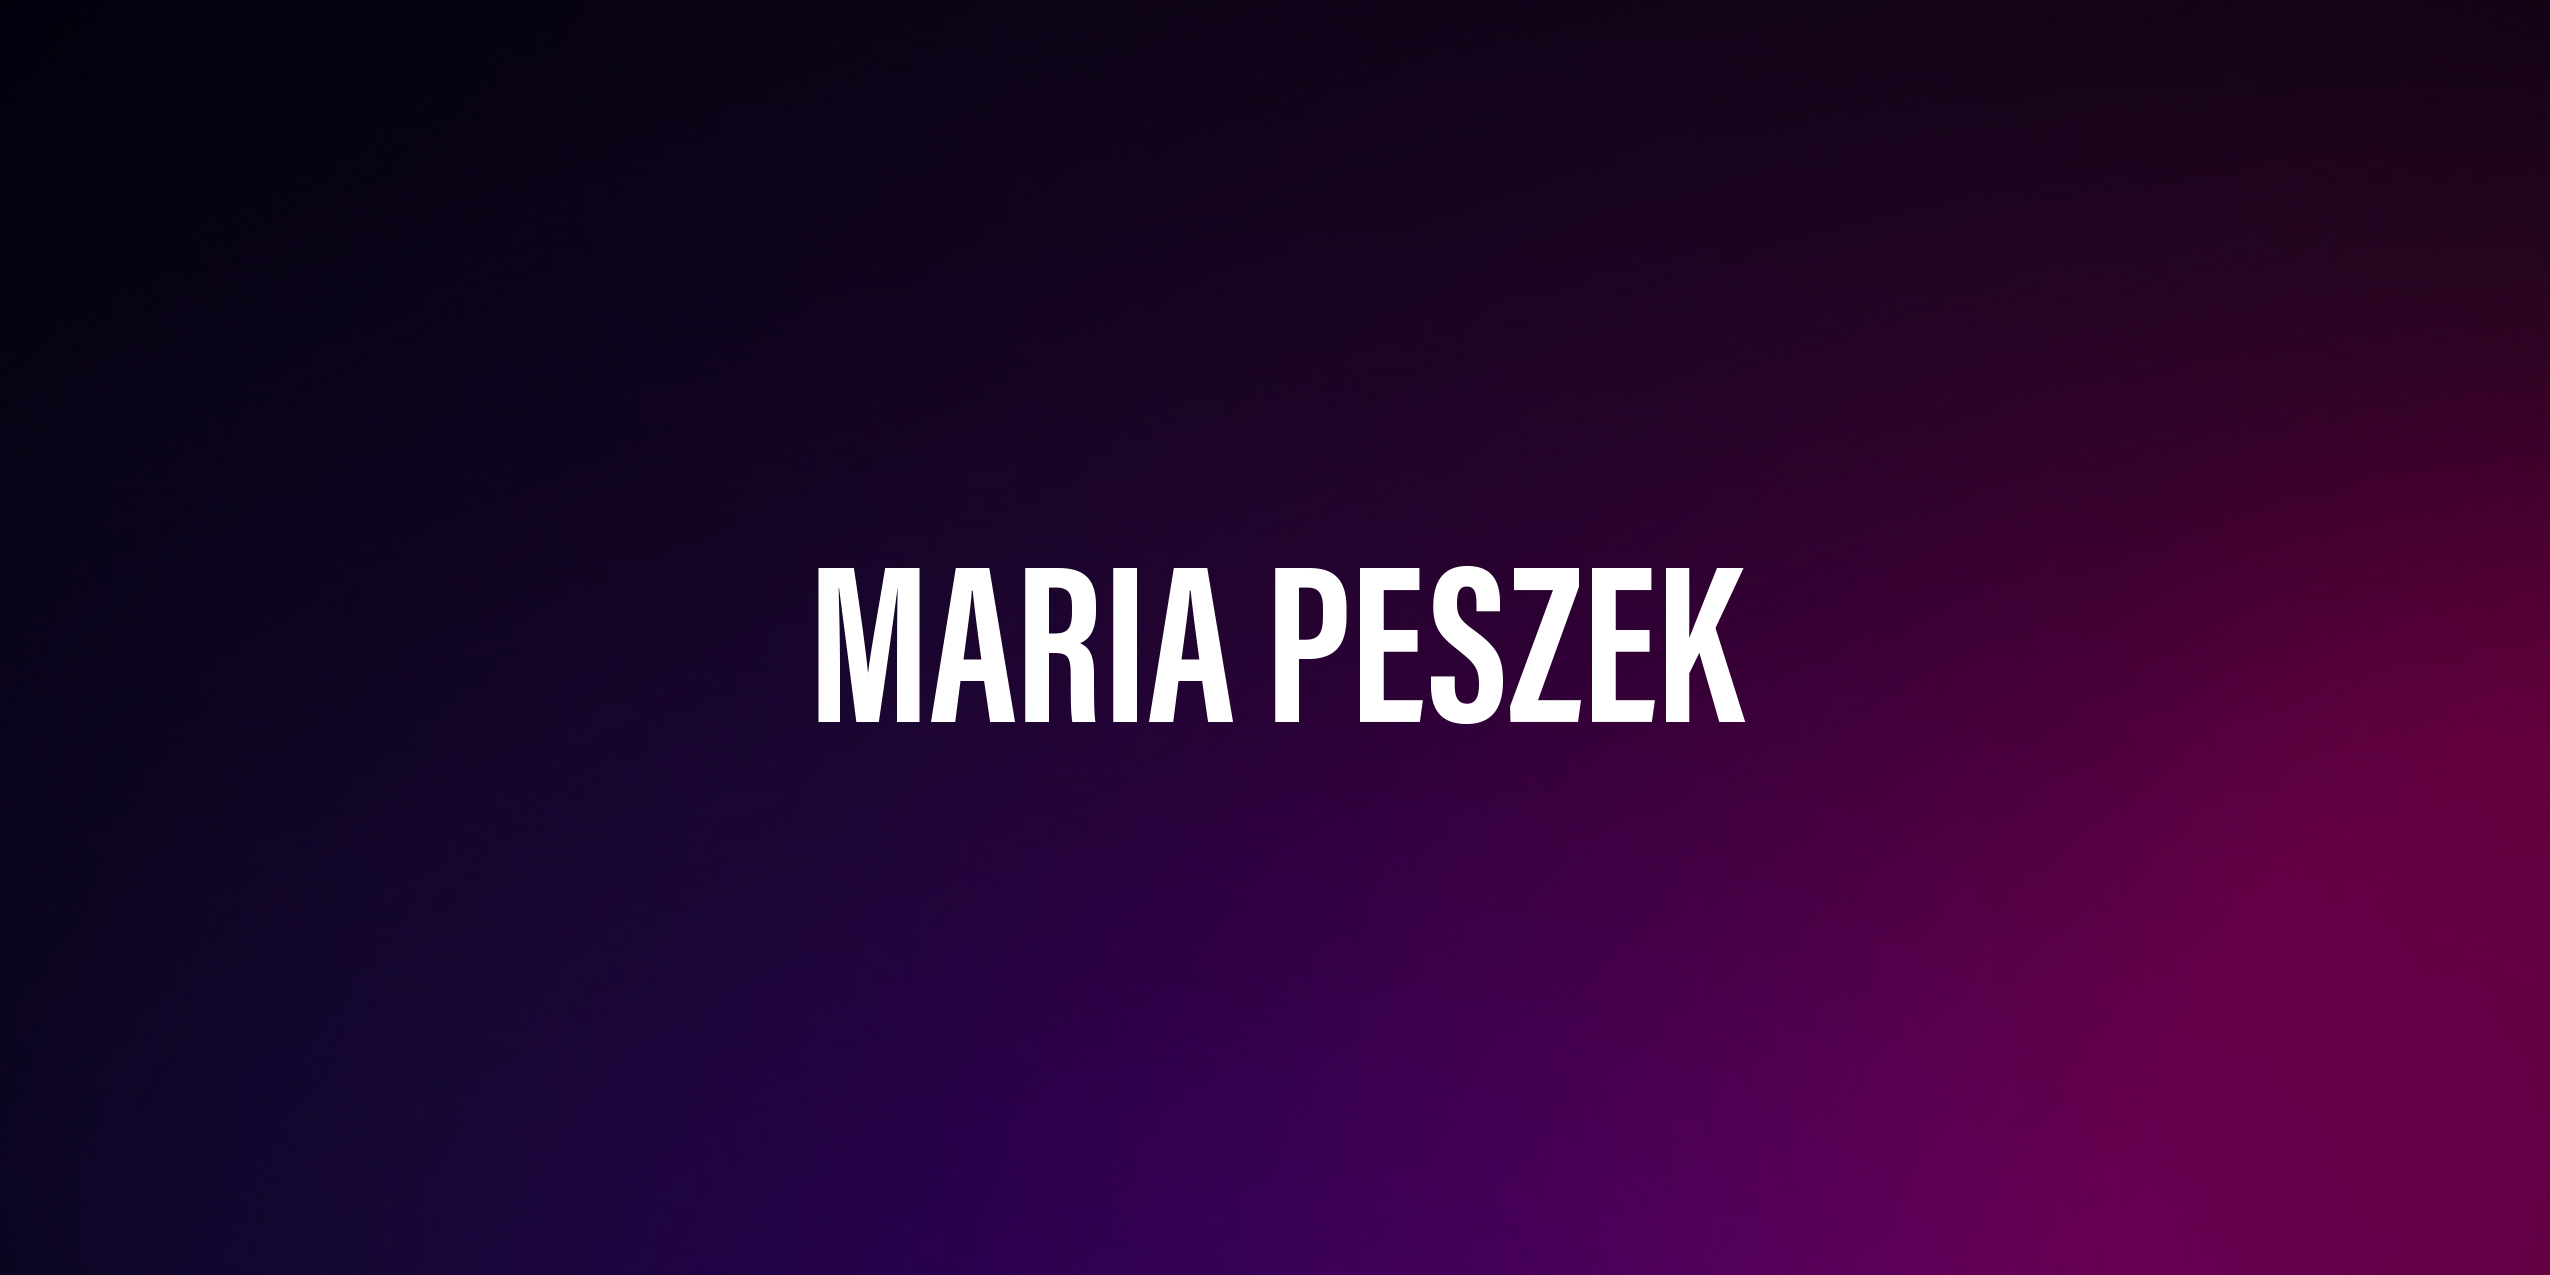 Maria Peszek – życiorys i filmografia